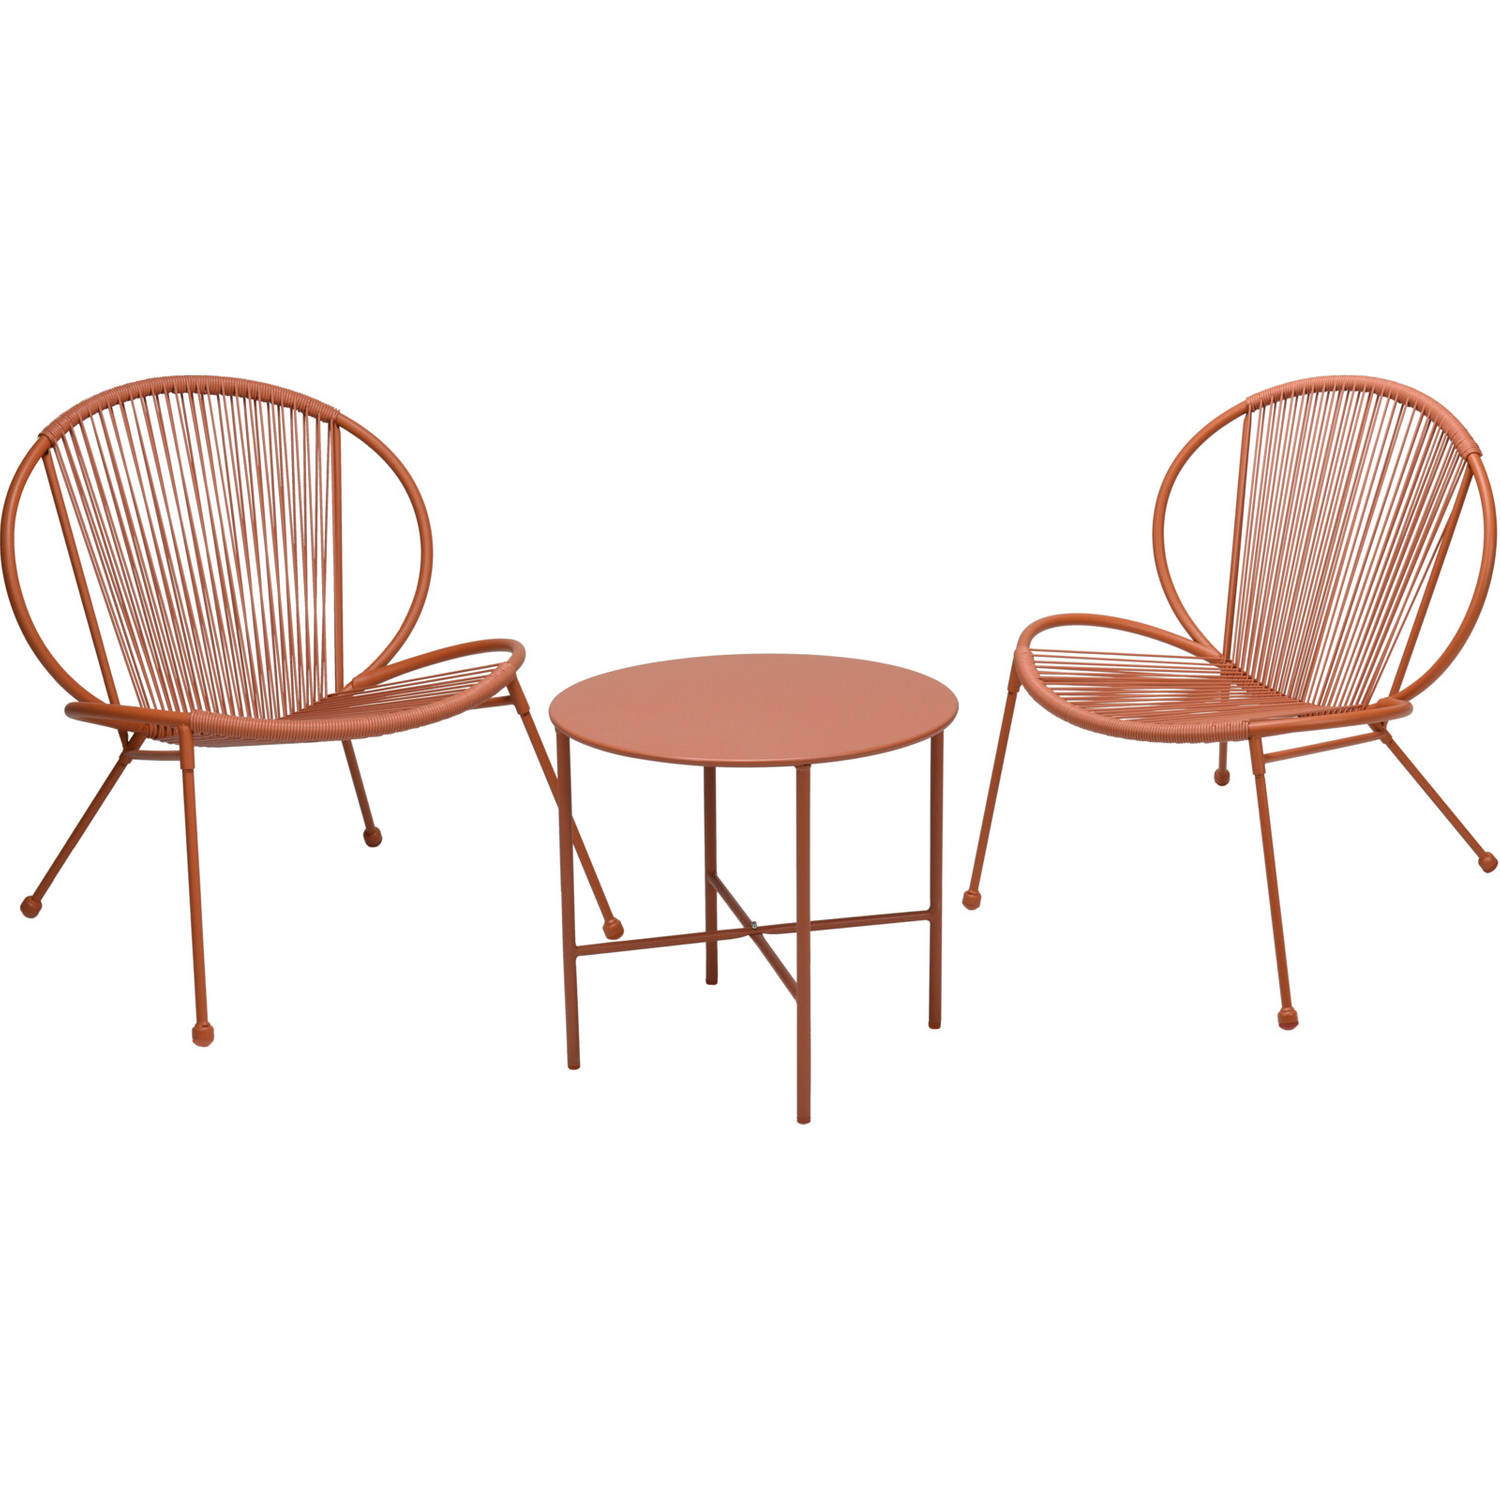 Relaxwonen - tuinset - roze - tafel + 2 stoelen